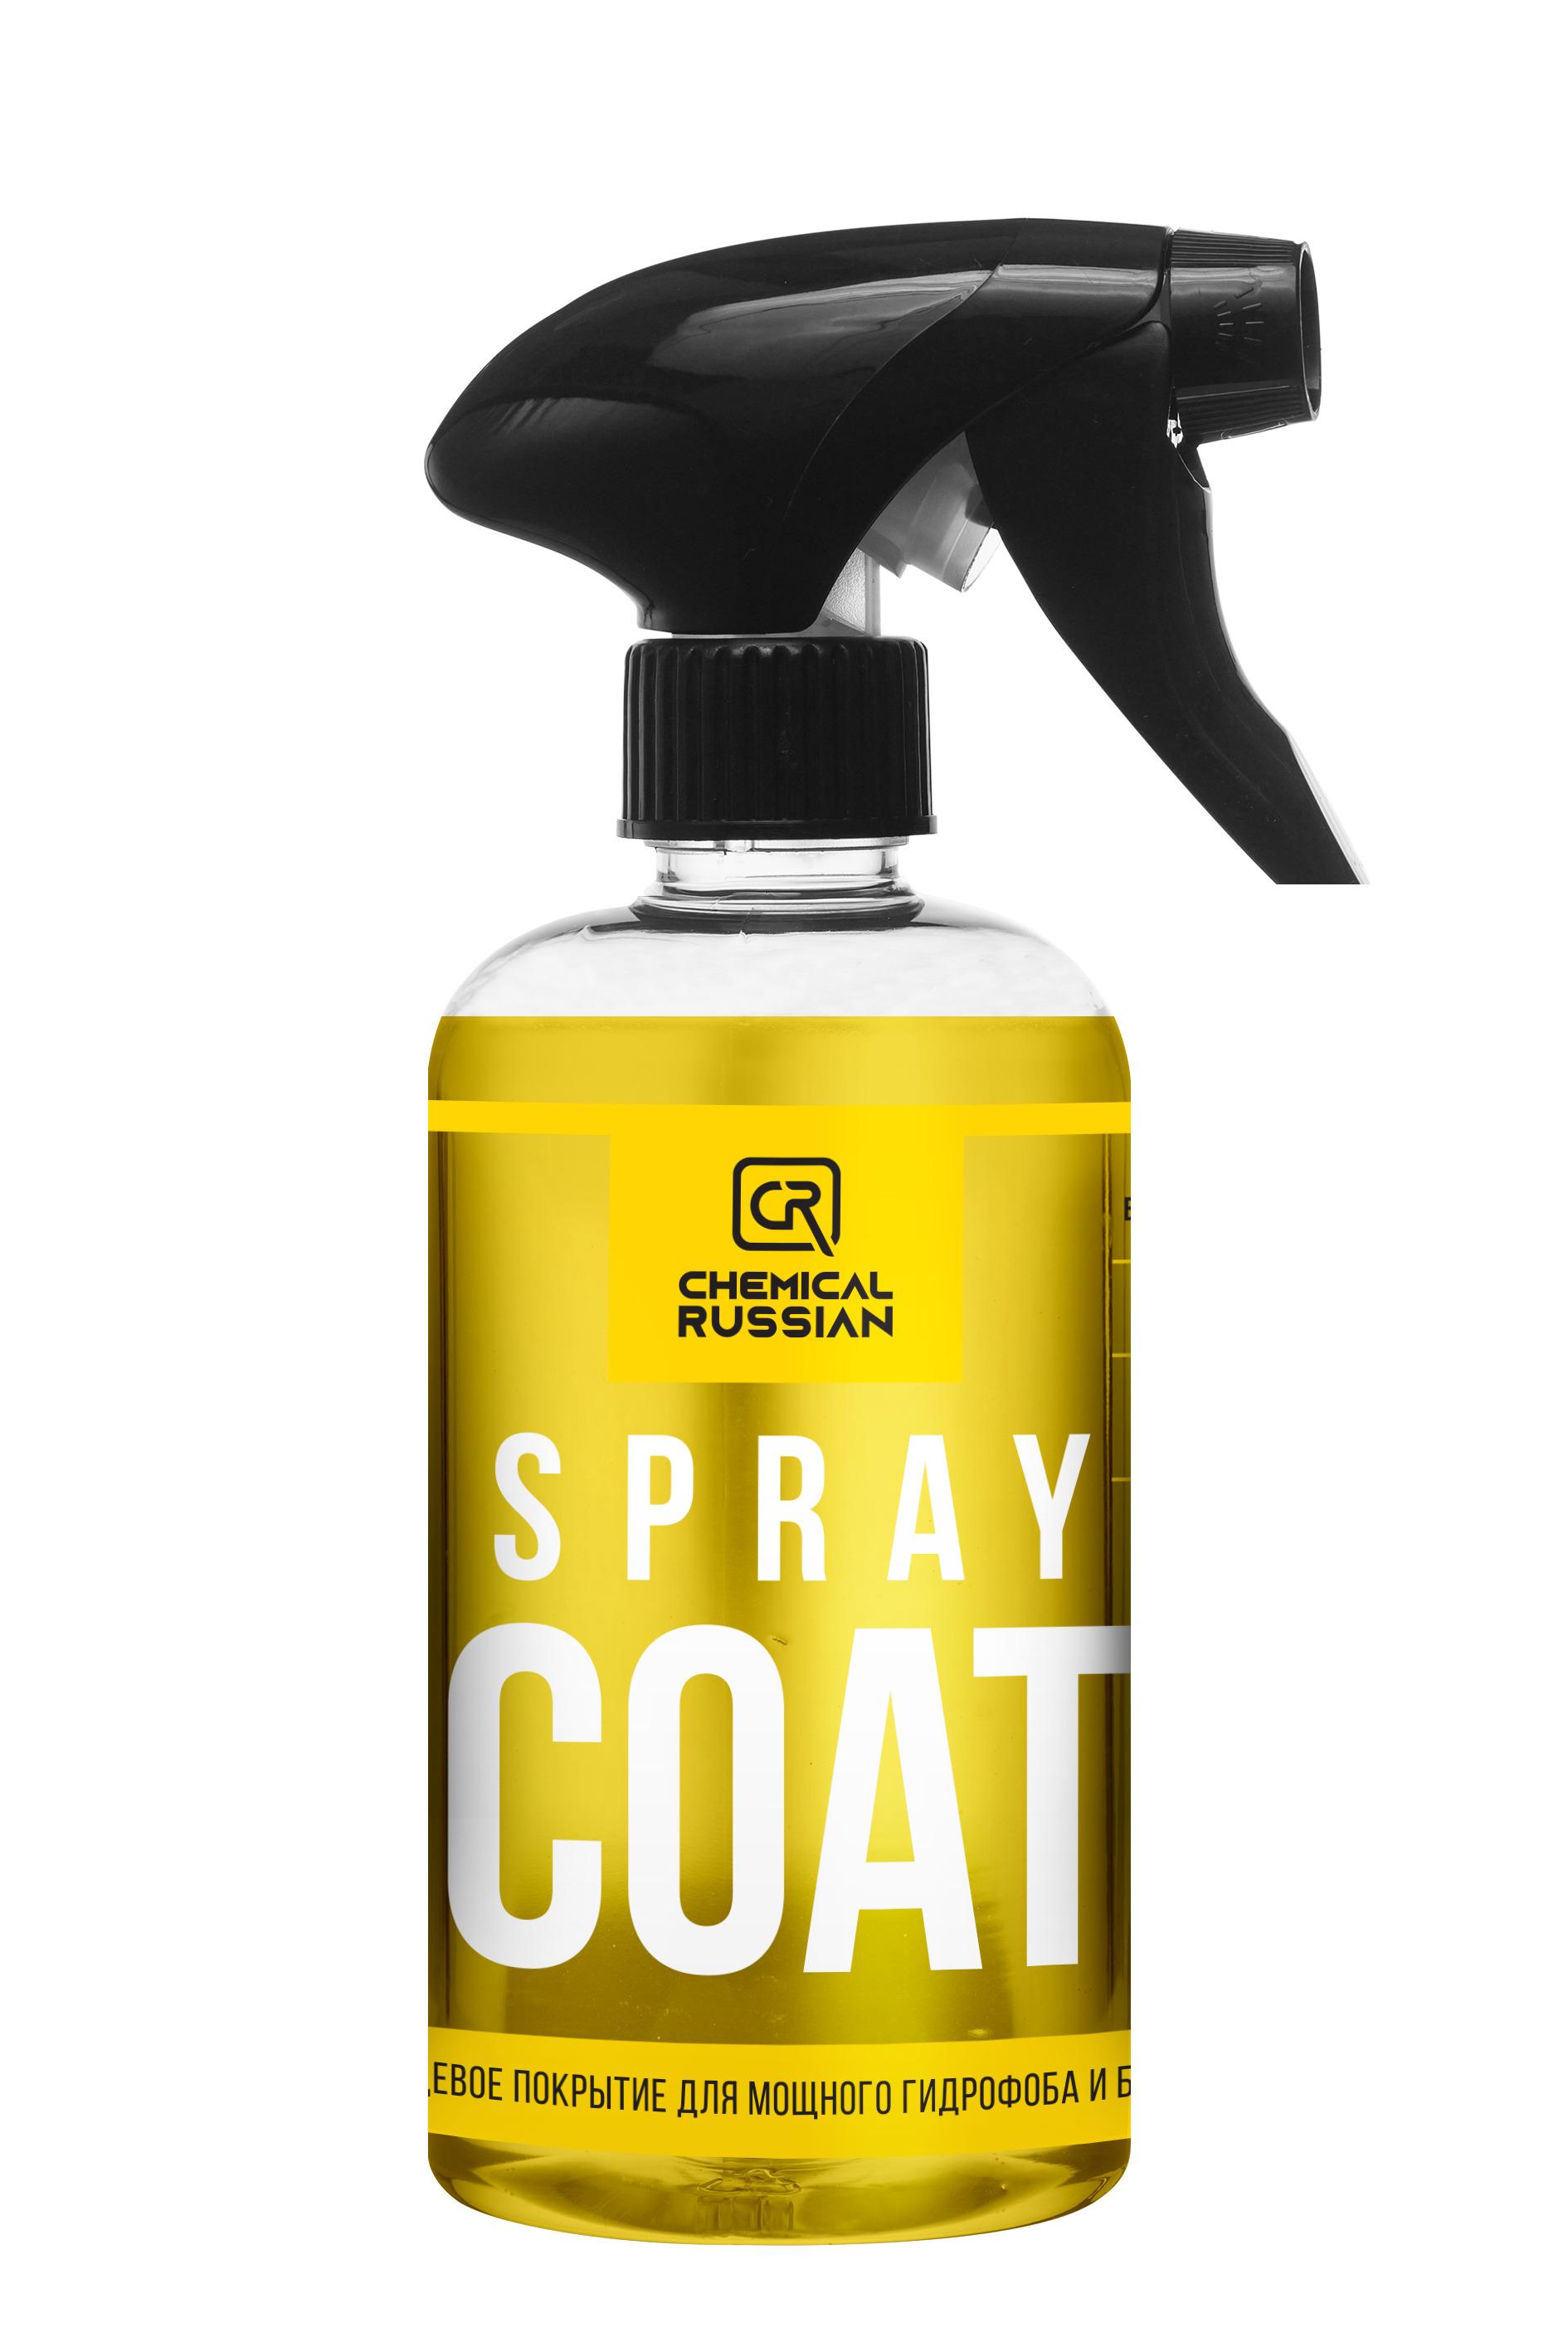 Spray Coat, 500 мл / Chemical Russian / Кварцевое покрытие для кузова, гидрофобное покрытие для авто